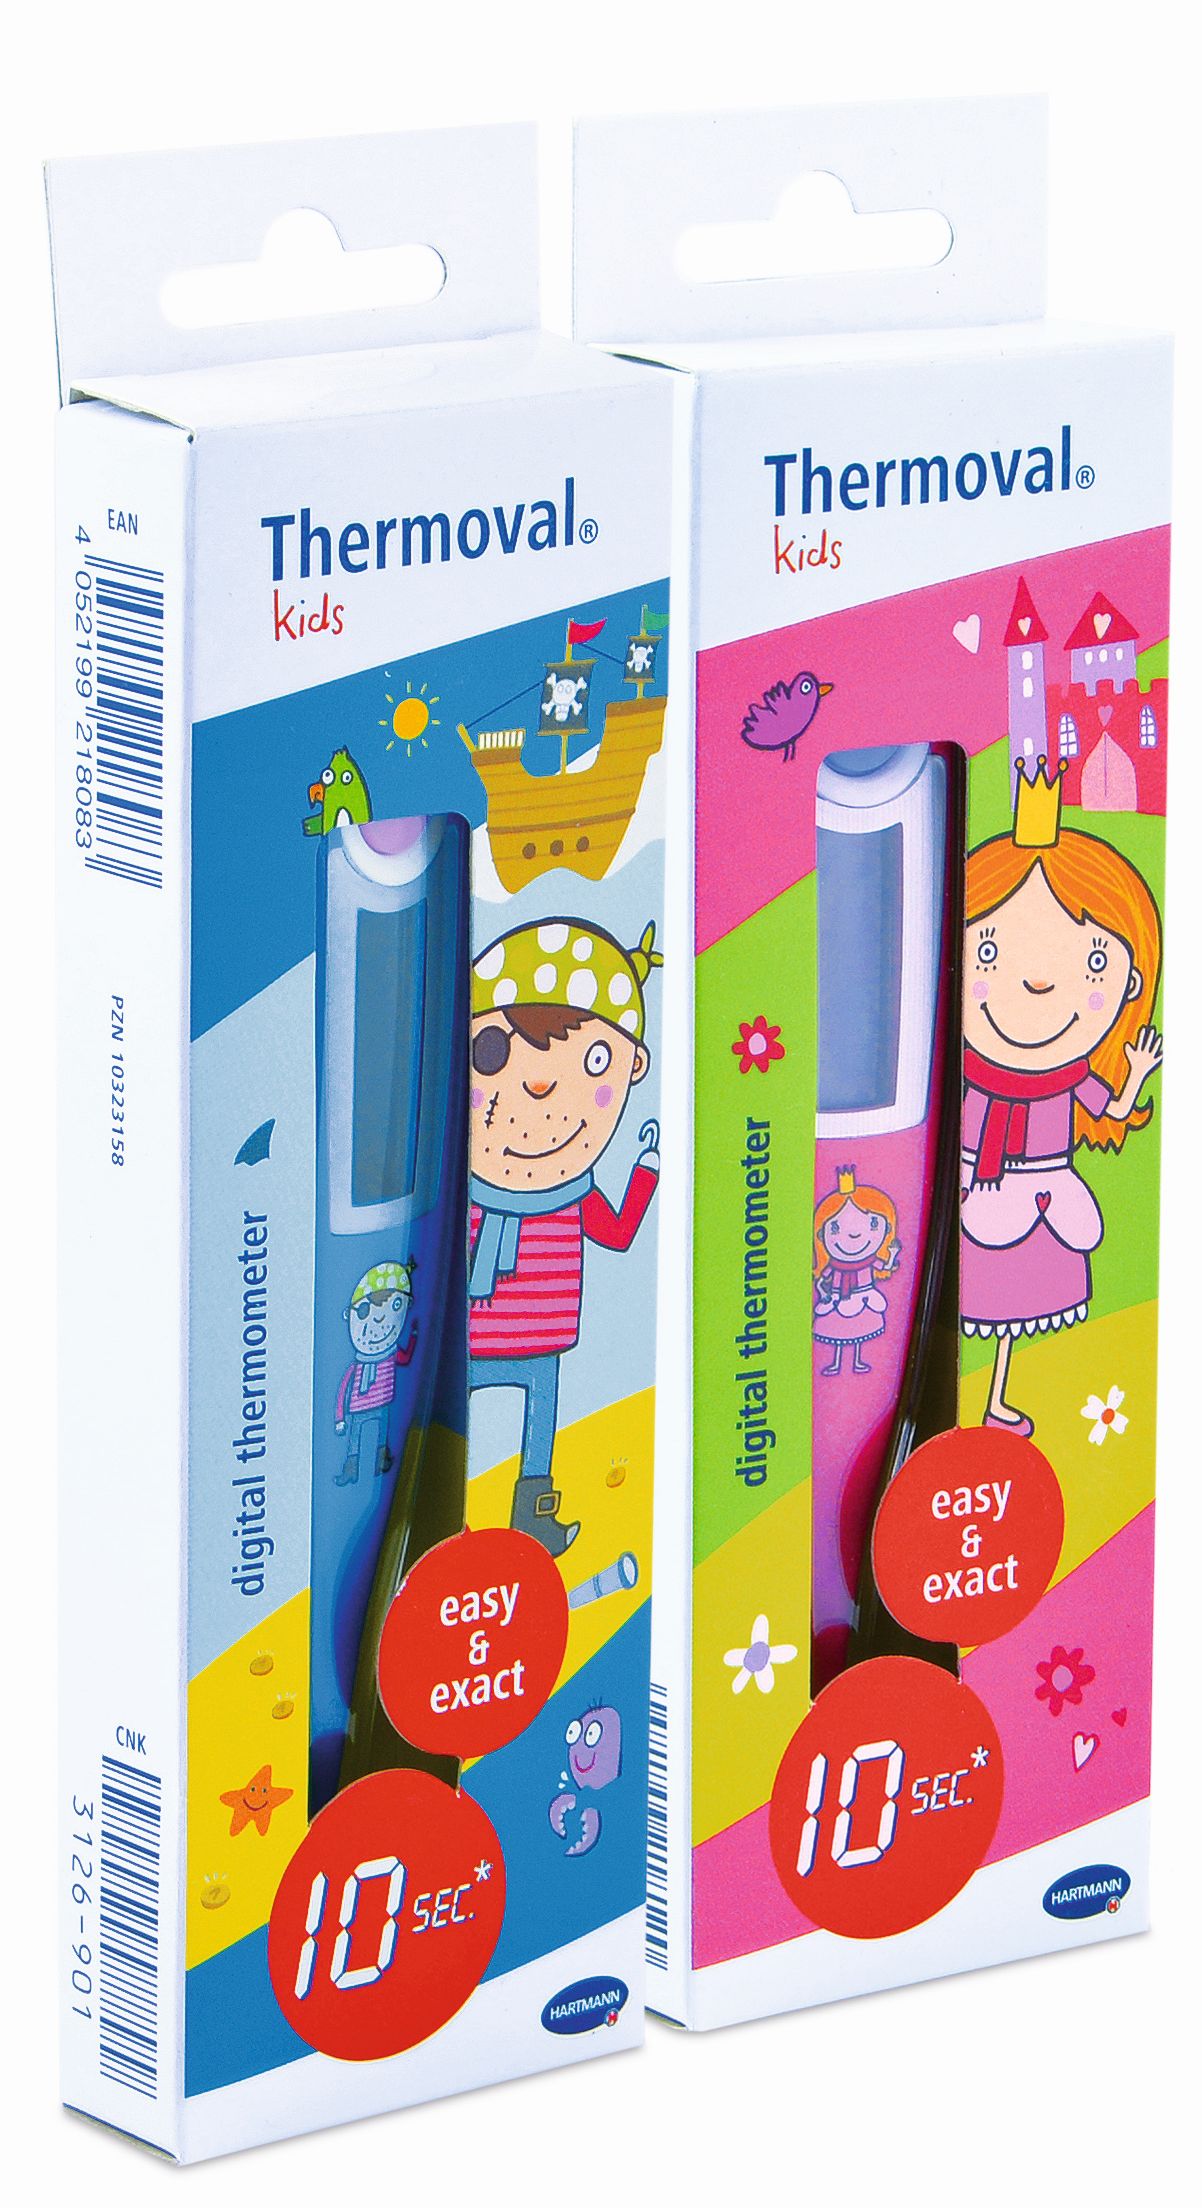 Termometre - Termometru digital cu timp scurt de masurare Thermoval Kids, Hartmann